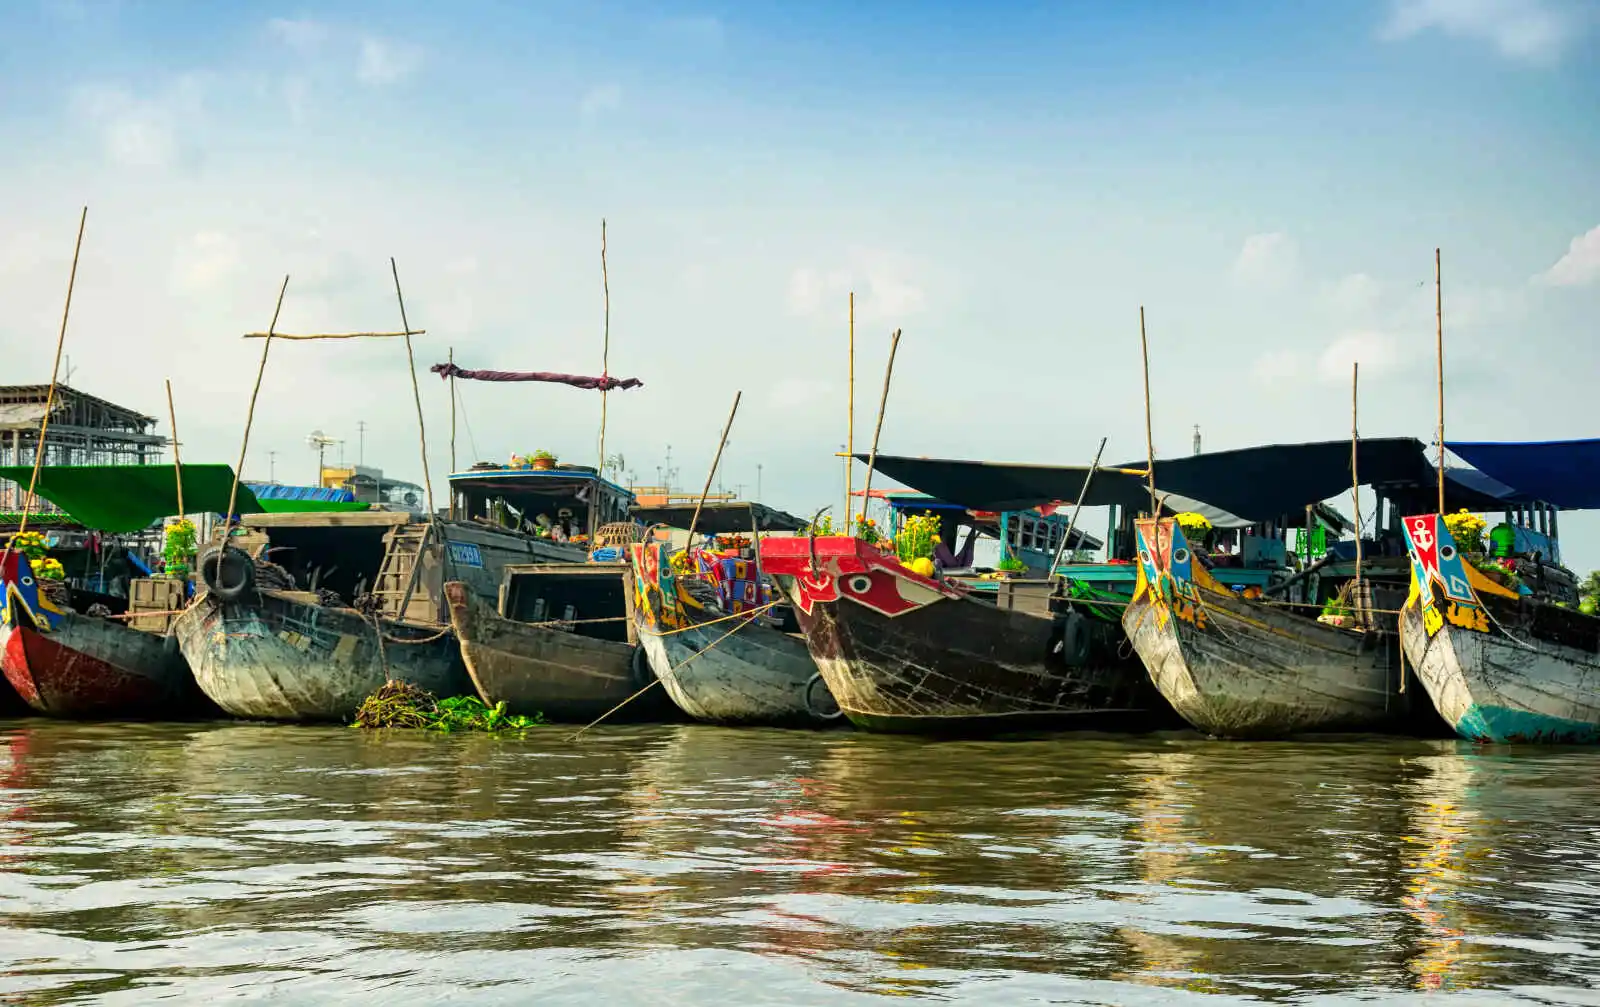 Bateaux, marché flottant, Cai Be, Vietnam